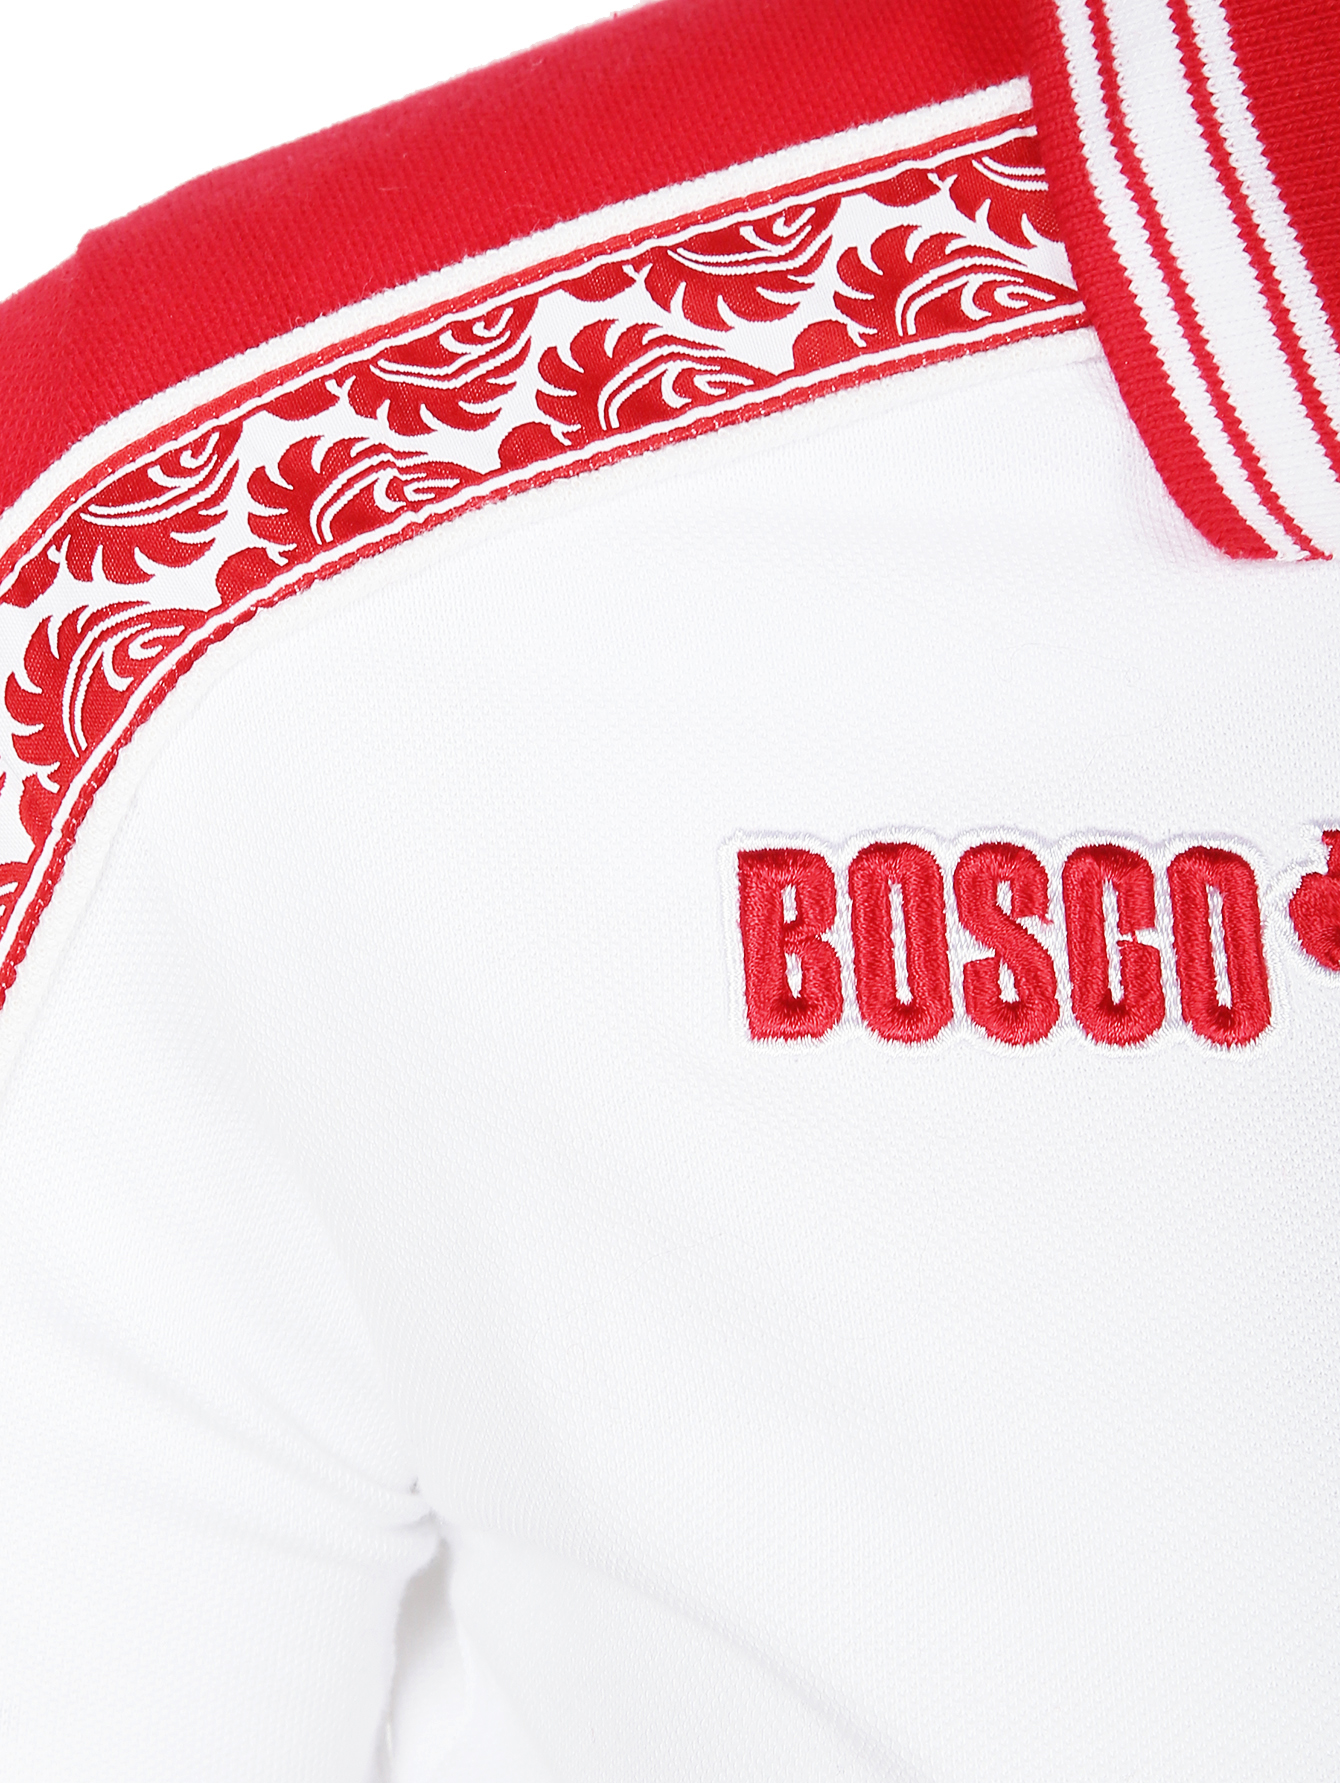 Боско 18. Боско (2024) Bosco. Боско спорт 1996. Bosco Sport 20005. Орнамент Боско.